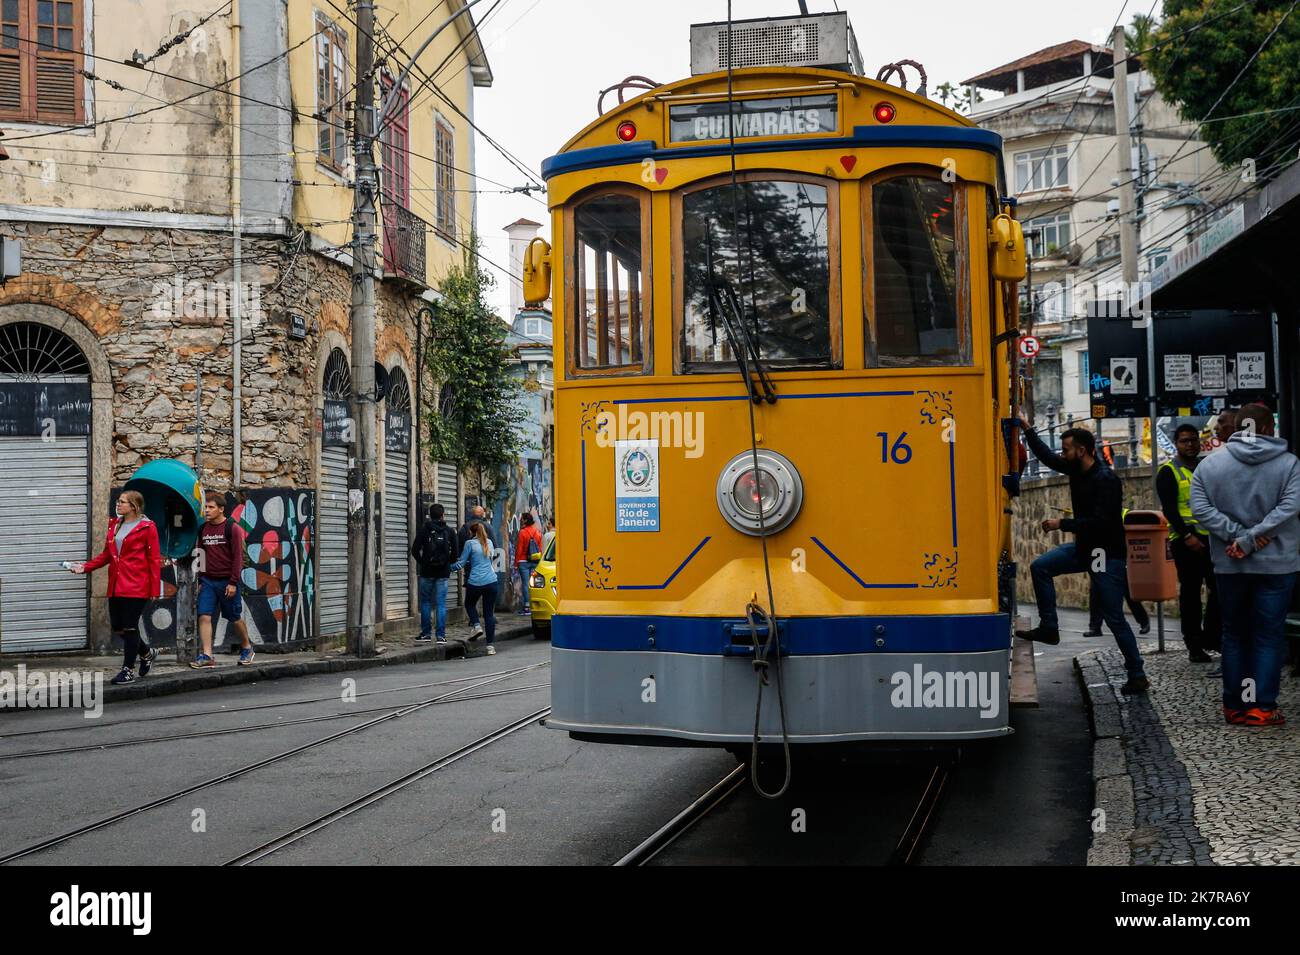 La funivia del tram di Santa Teresa percorre la strada acciottolata del quartiere. Persone bordo storico vintage sistema di trasporto, attrazione turistica Foto Stock